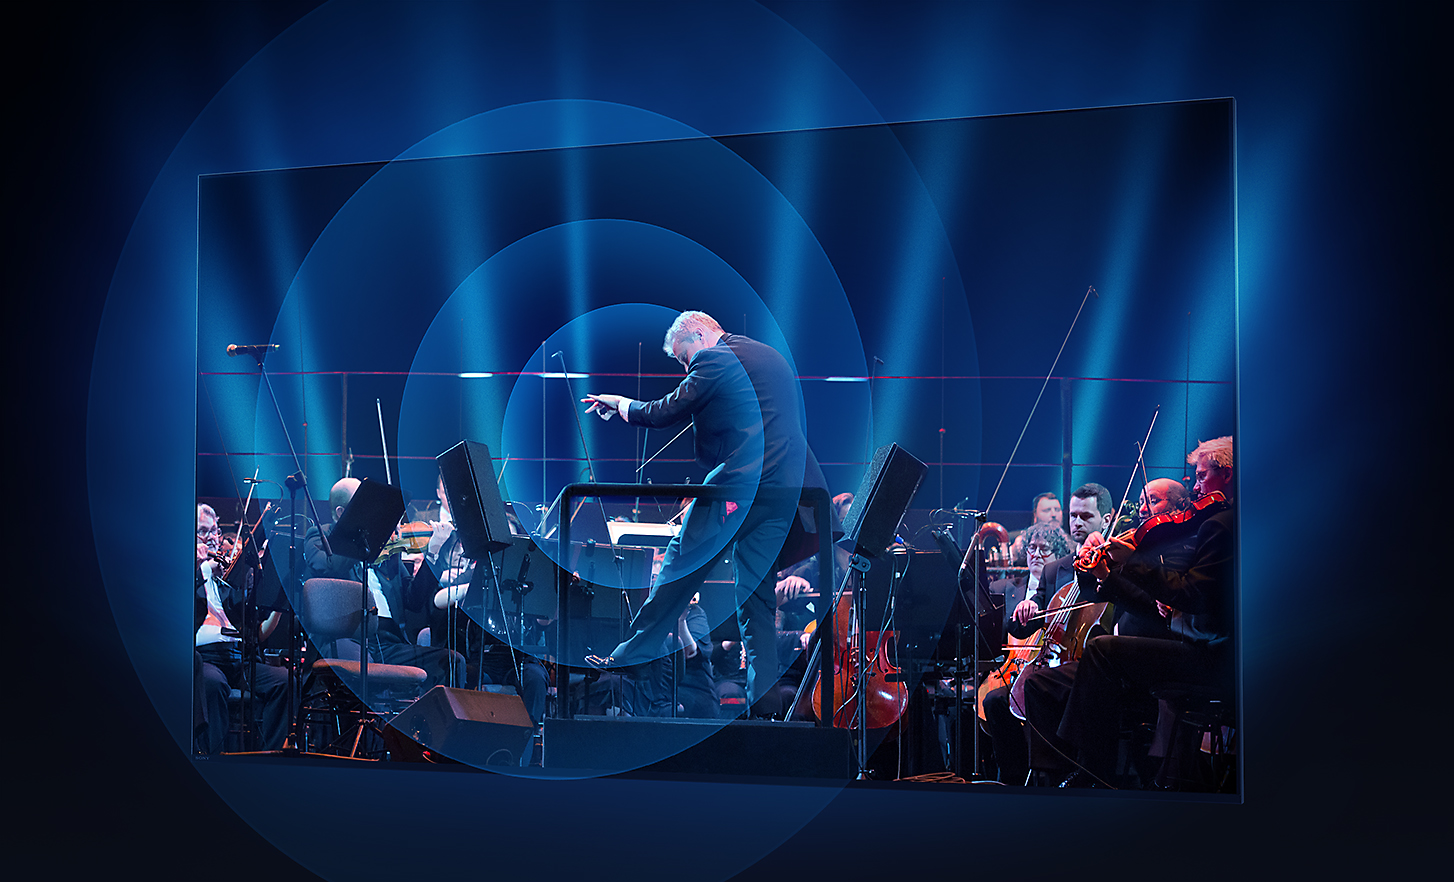 BRAVIA televízió képernyője, amelyen egy karmester és a zenekara látható; hanghullámok sugároznak ki koncentrikus körökben a képernyő középpontjából